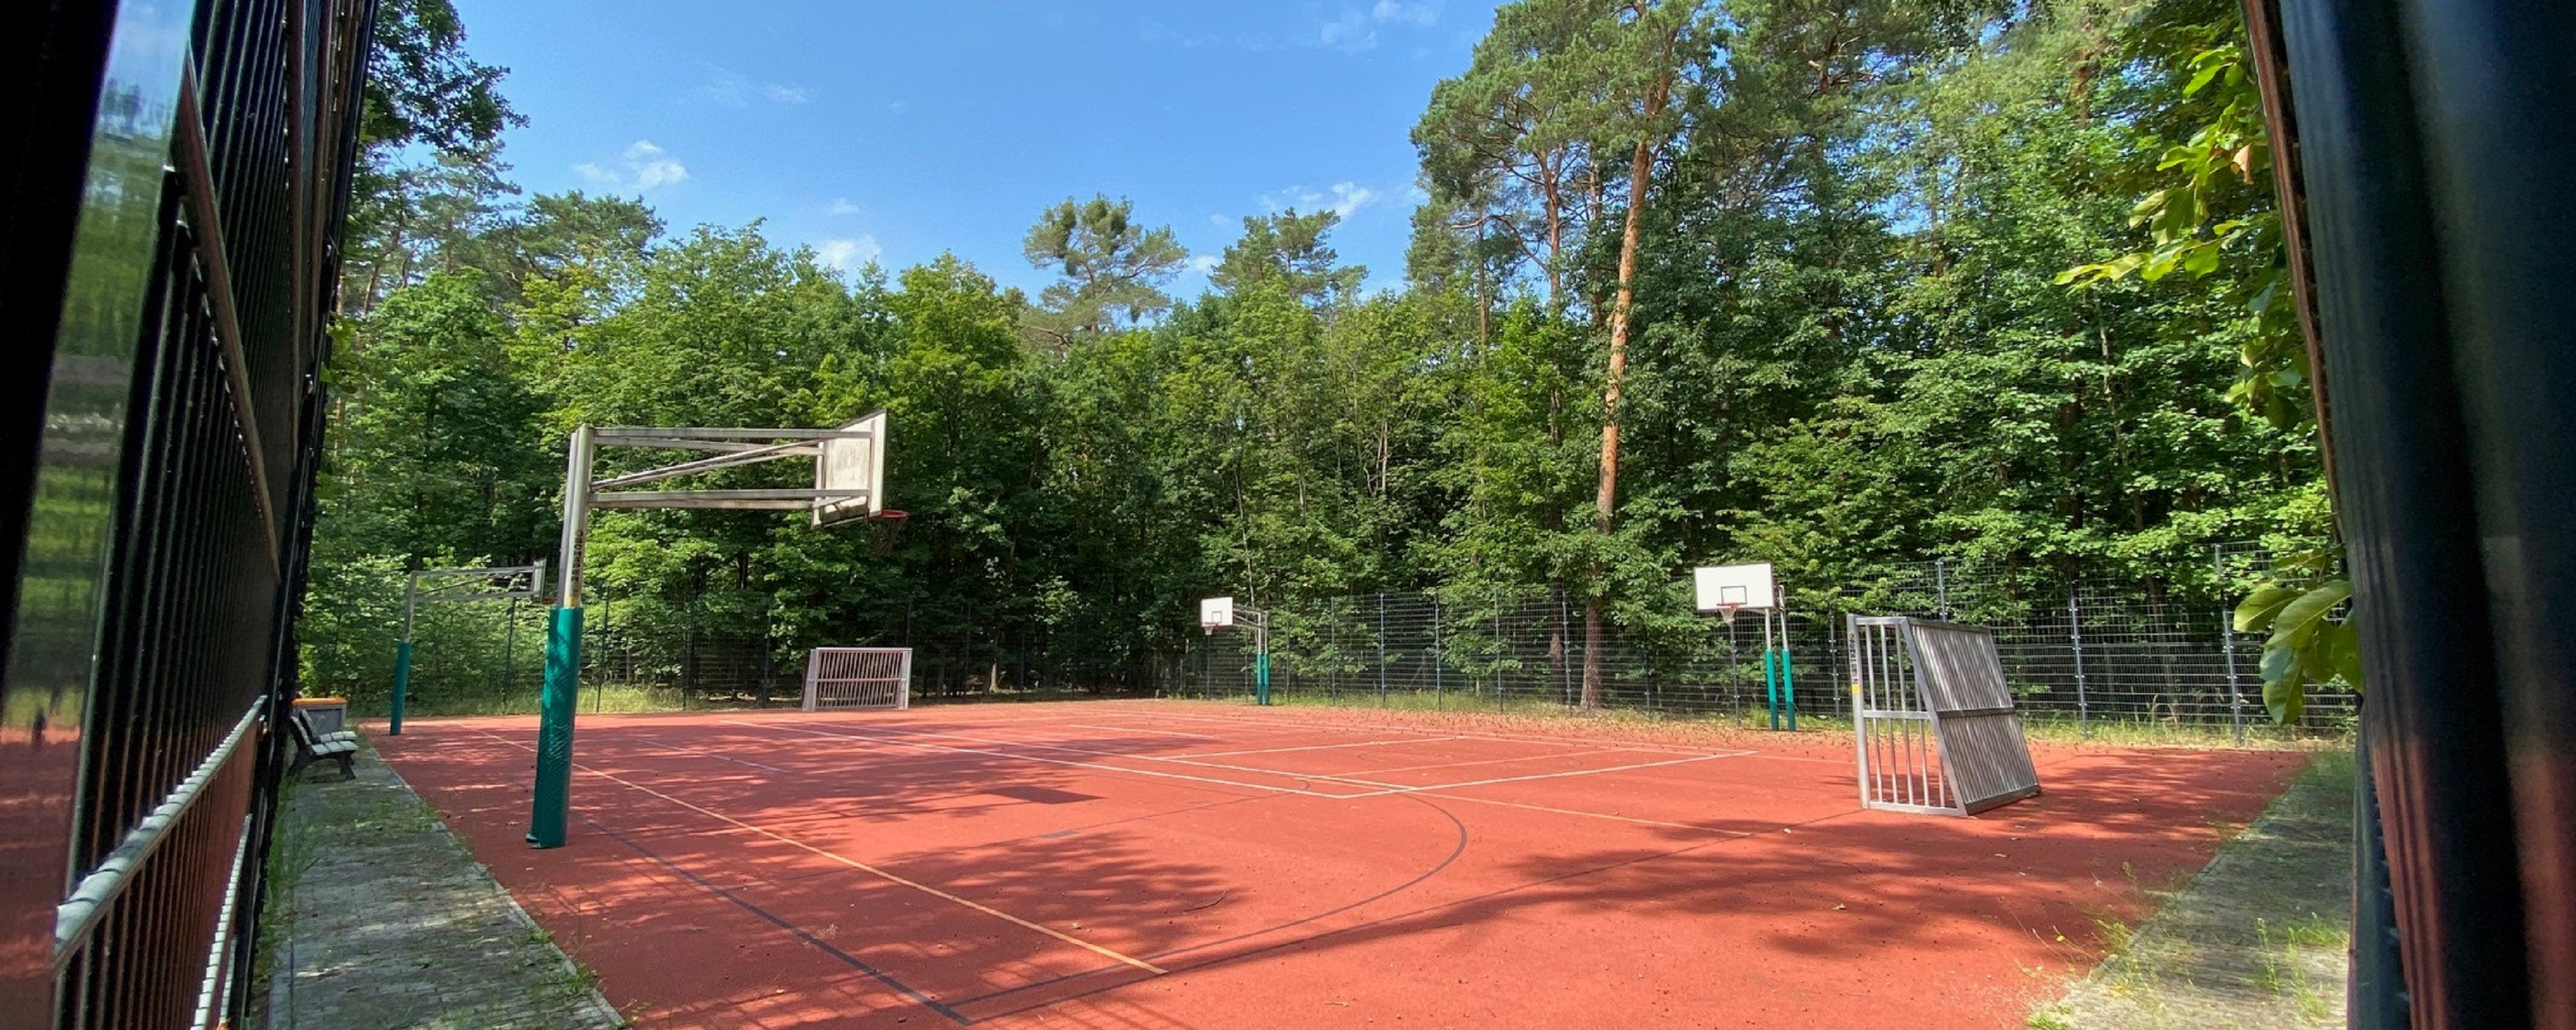 Bild: Das Bild zeigt den Sportplatz im Wald.